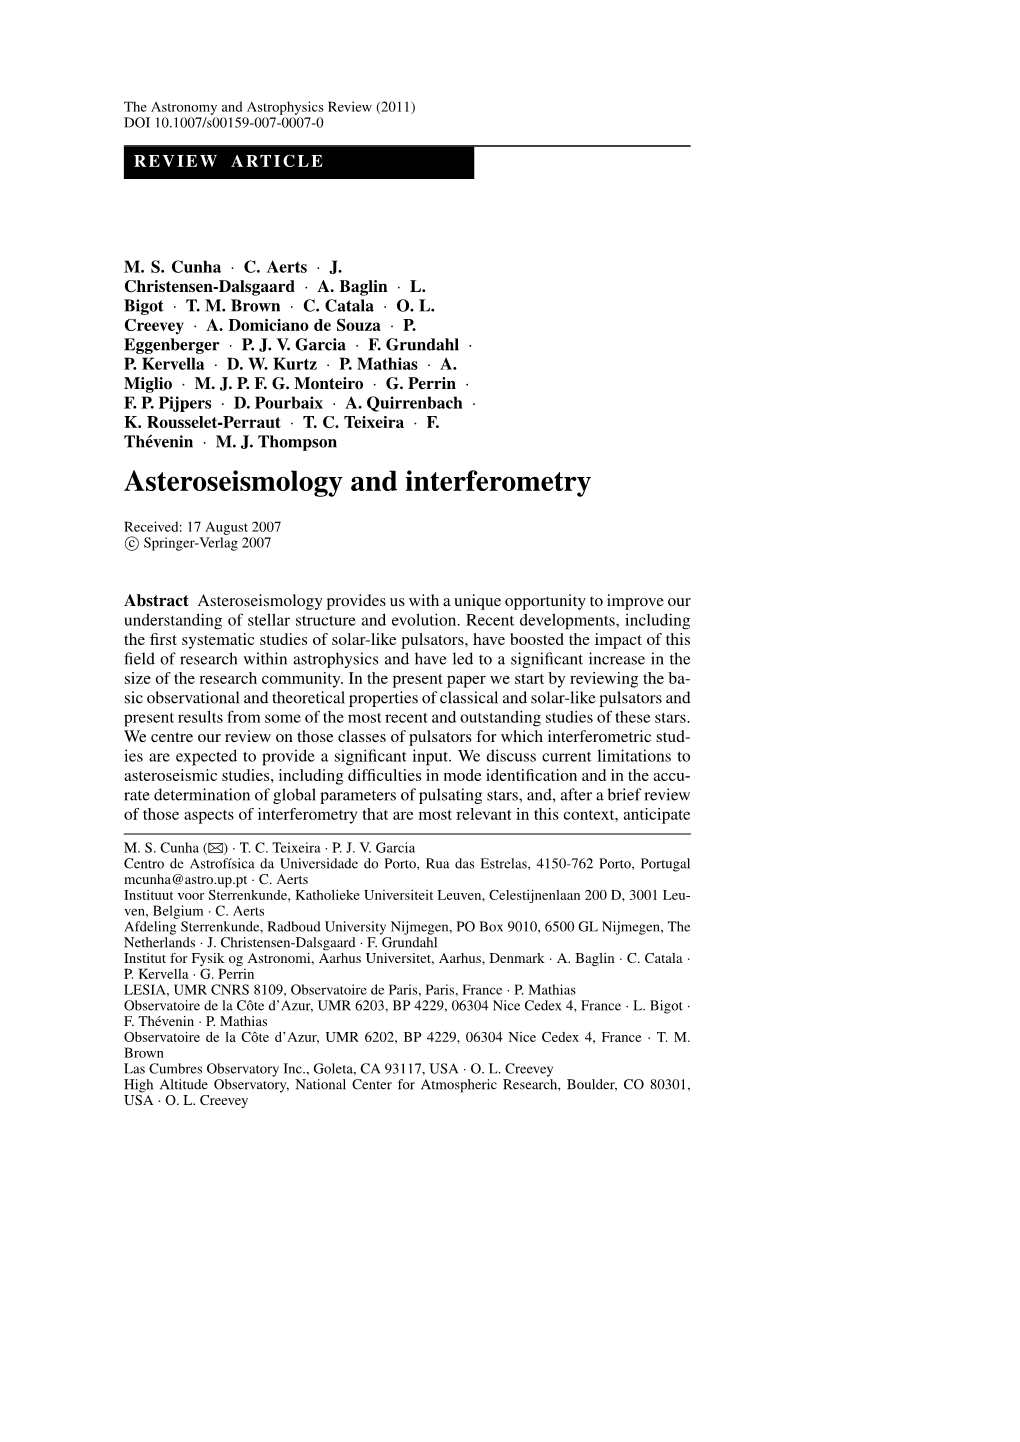 Asteroseismology and Interferometry